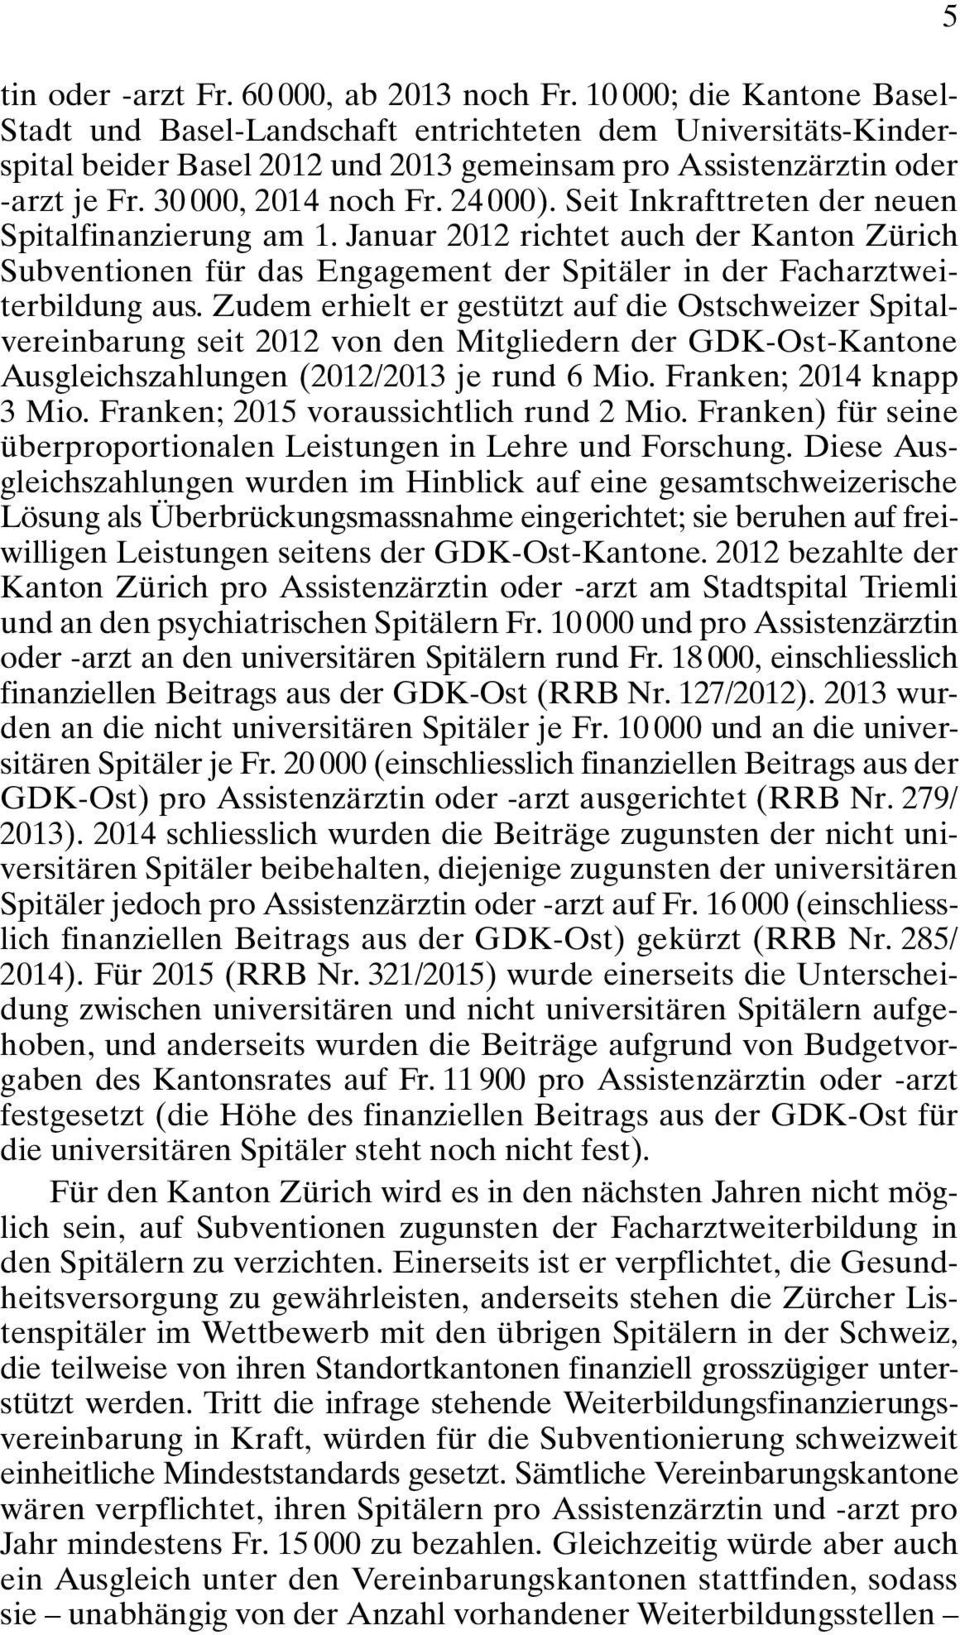 24 000). Seit Inkrafttreten der neuen Spitalfinanzierung am 1. Januar 2012 richtet auch der Kanton Zürich Subventionen für das Engagement der Spitäler in der Facharztweiterbildung aus.